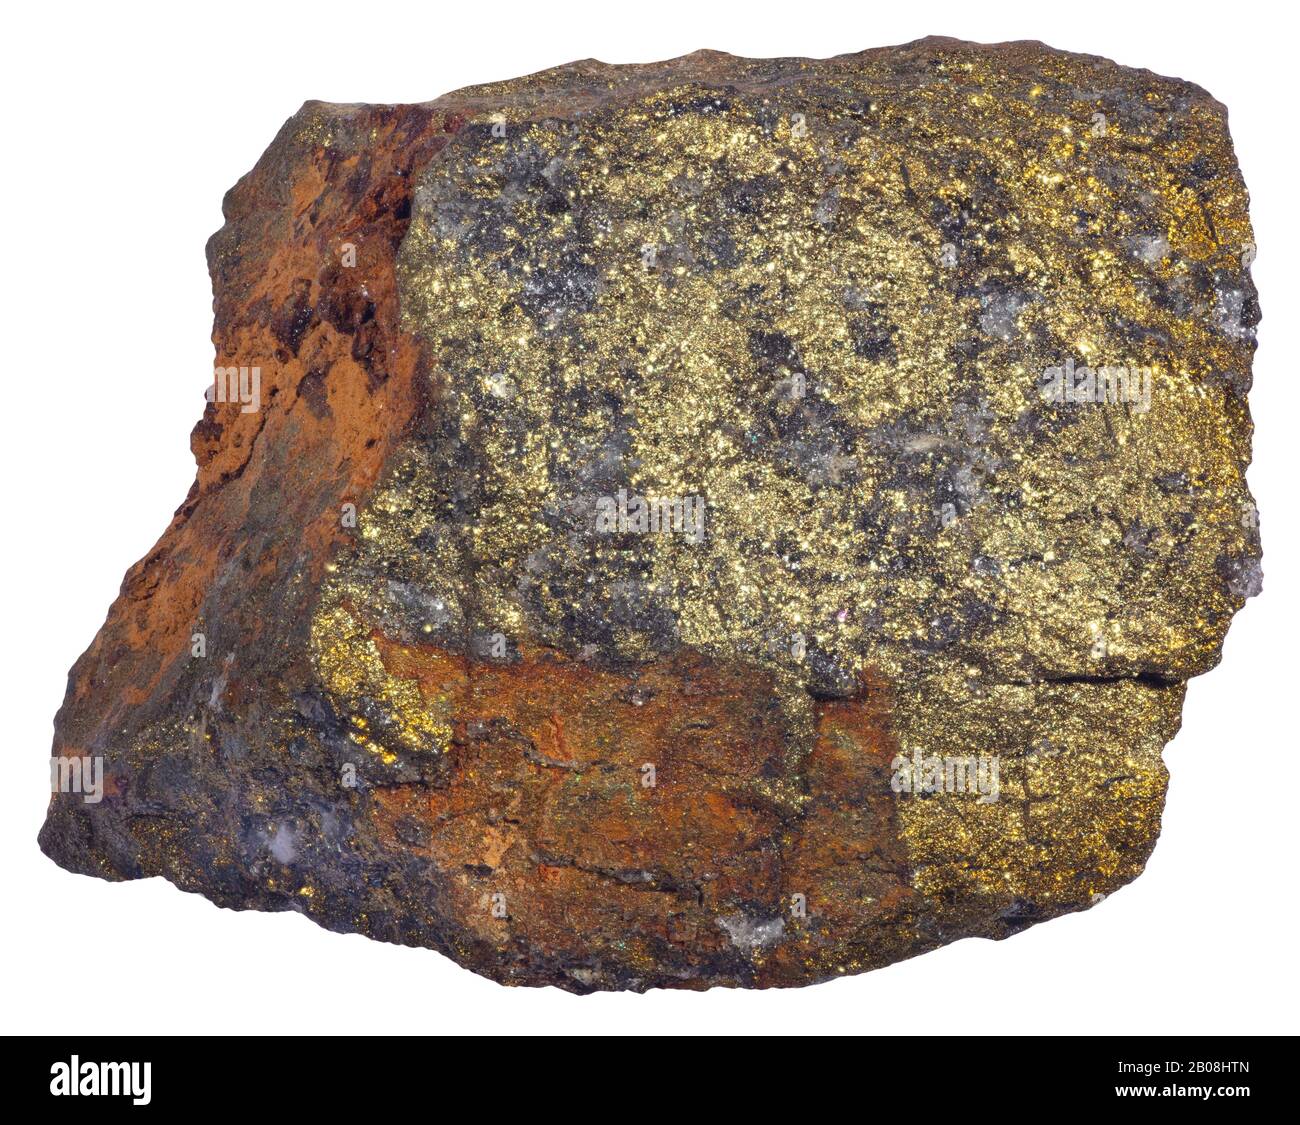 Pentlandit, Sudbury, Ontario Pentlandit ist ein bronzegelbes Mineral, das aus einem Sulfid aus Eisen und Nickel besteht und das Haupterz aus Nickel ist Stockfoto